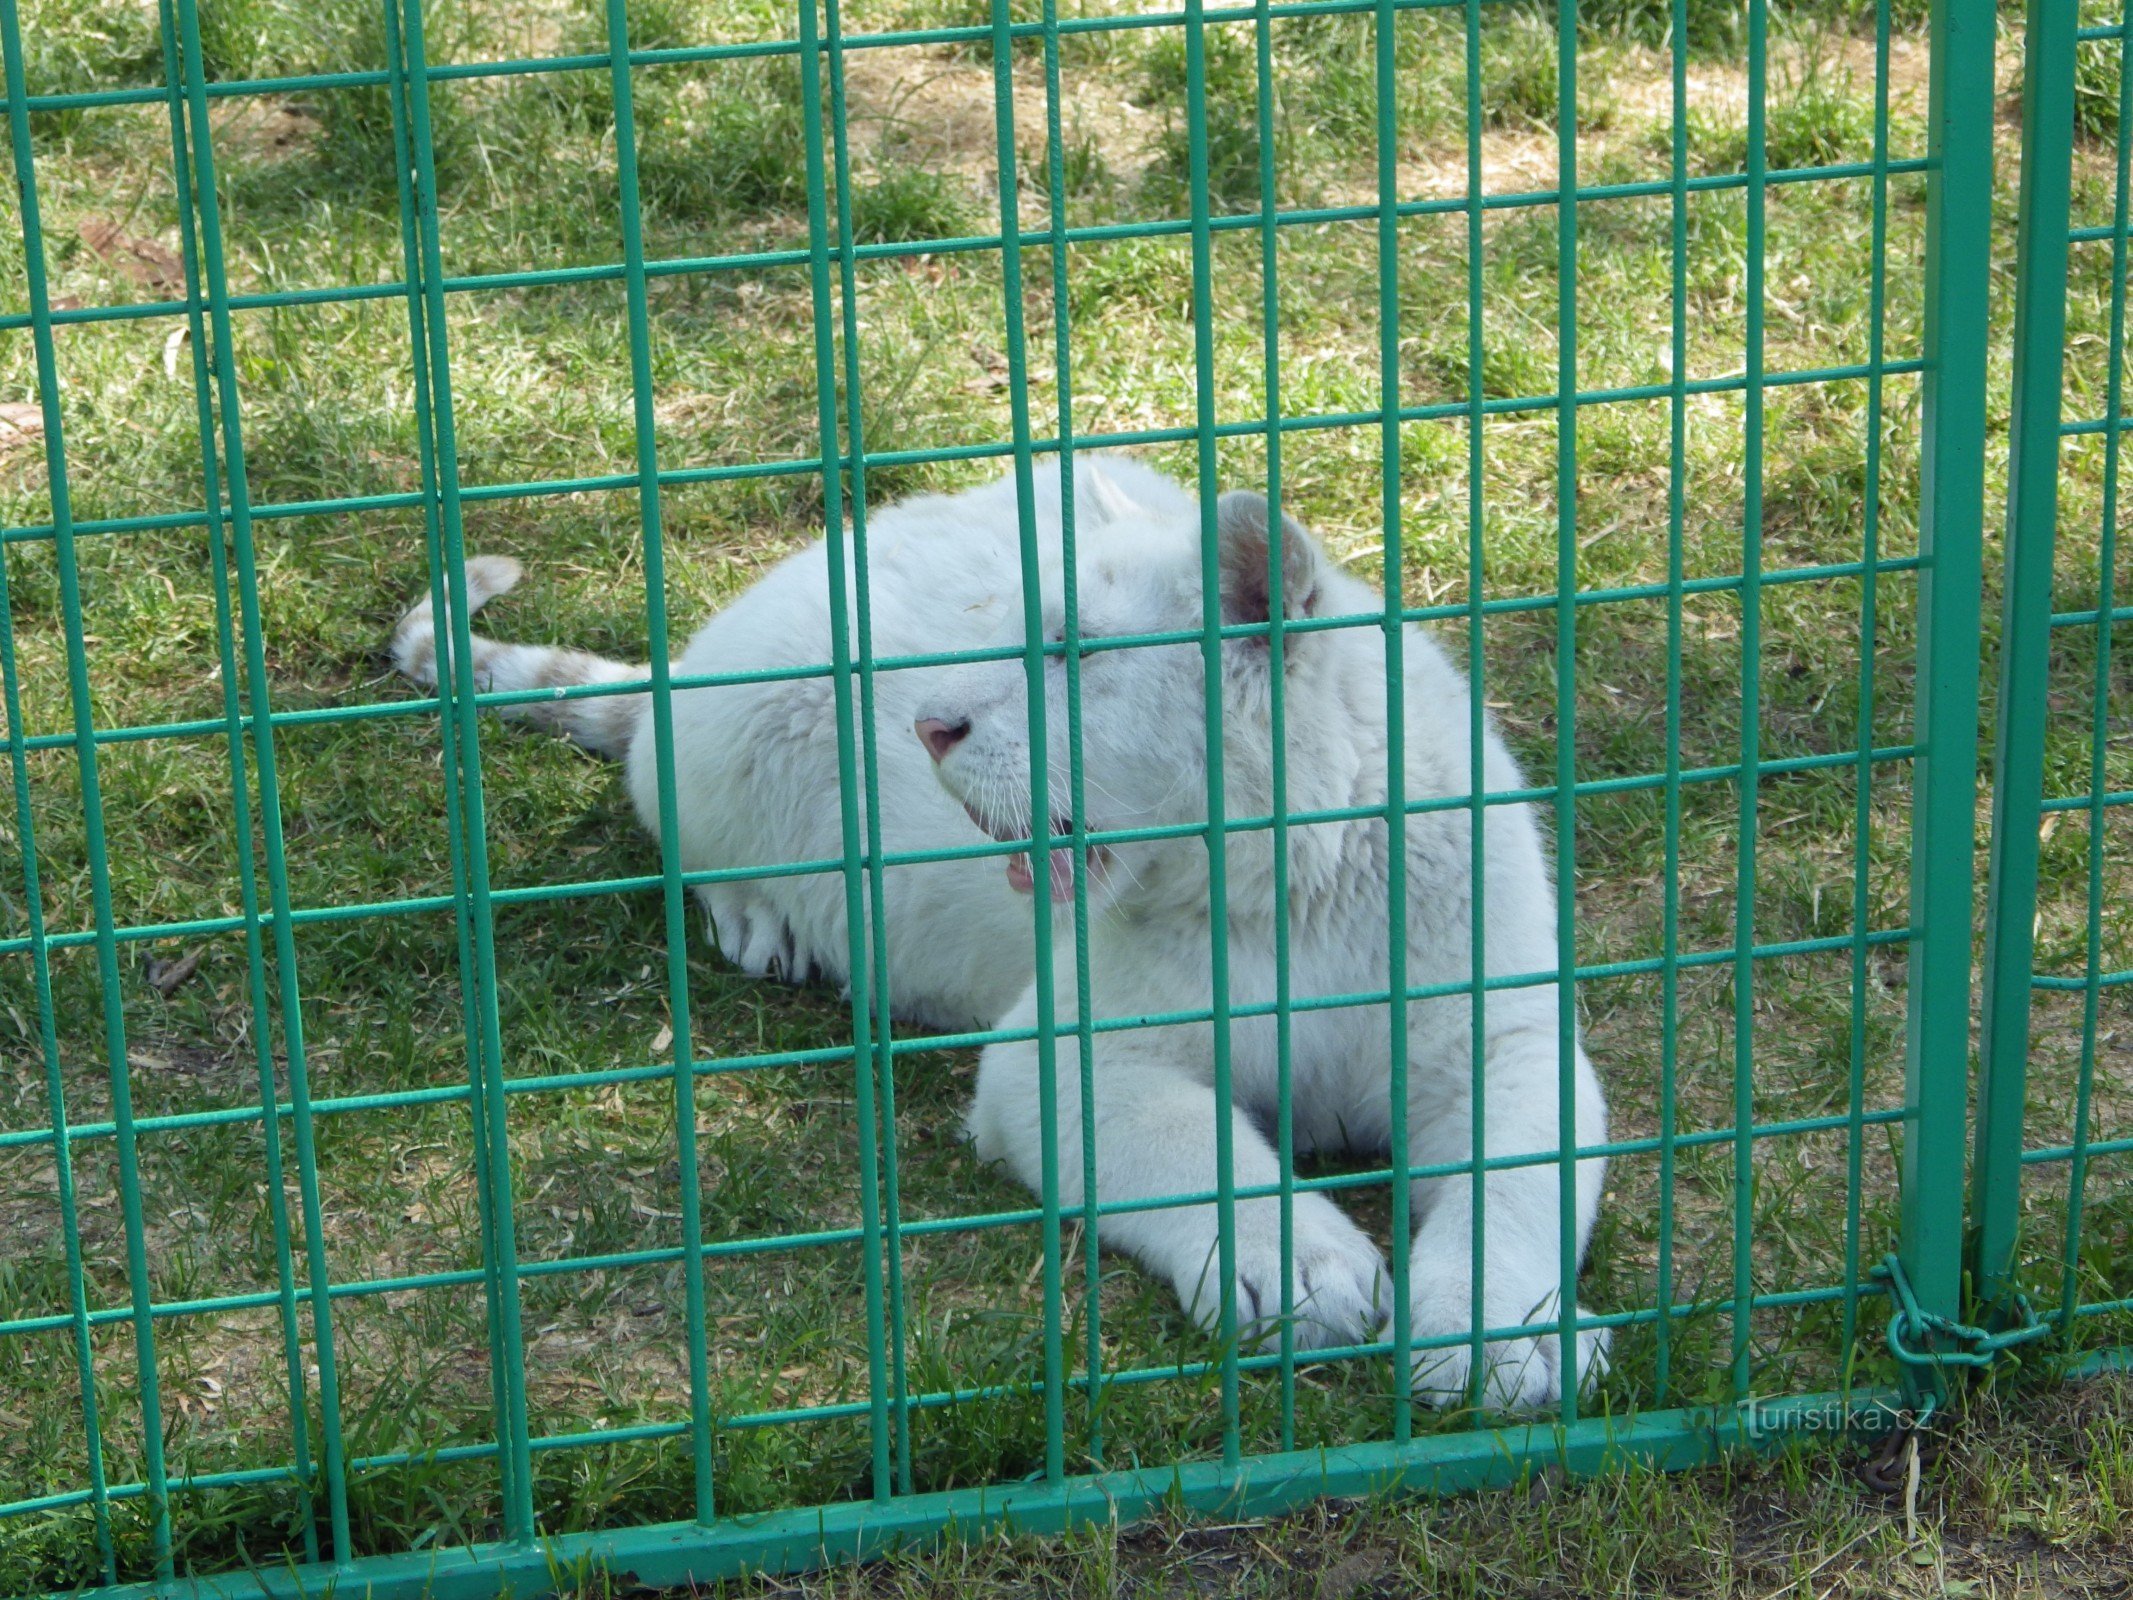 Ζωολογικός κήπος Doksy - φωτογράφηση με ένα λιοντάρι